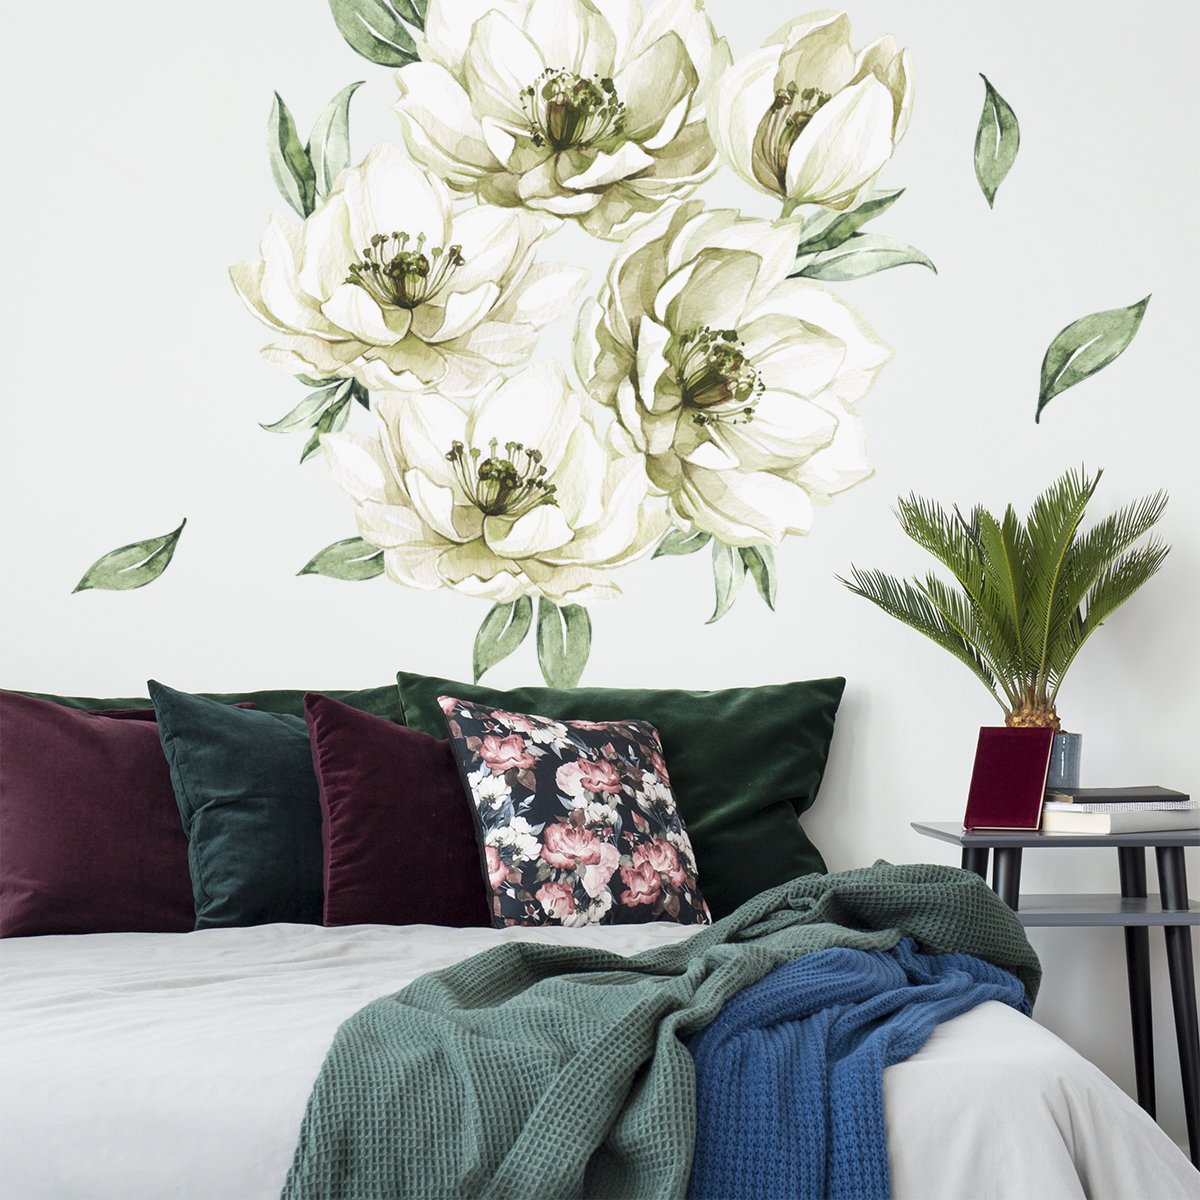 Naklejki na ścianę zielone kwiaty do sypialni#kolor_zielony